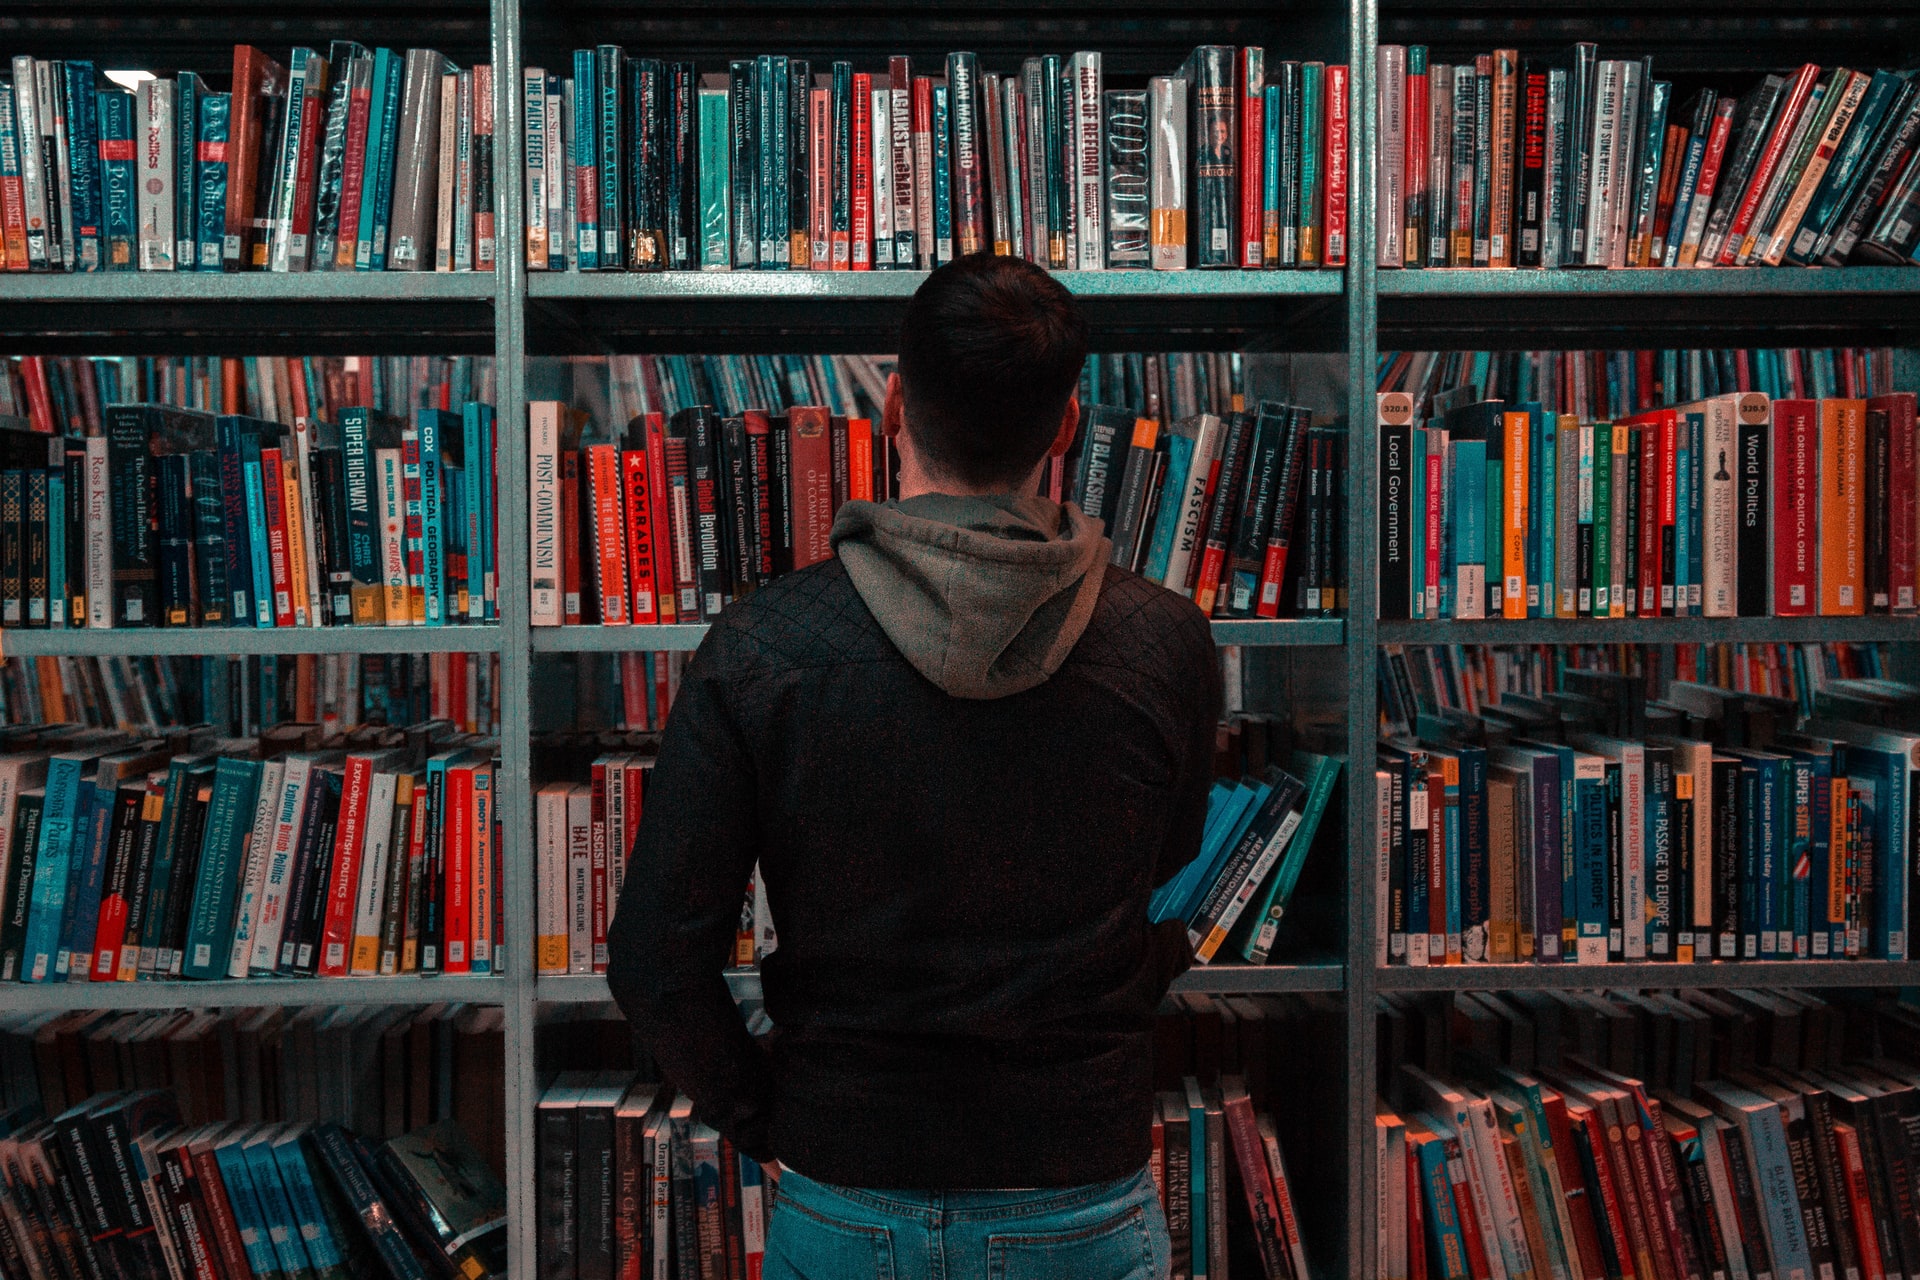 Homem em frente de uma estante cheia de livros, gesto corporal remetendo a dúvida, pensamento